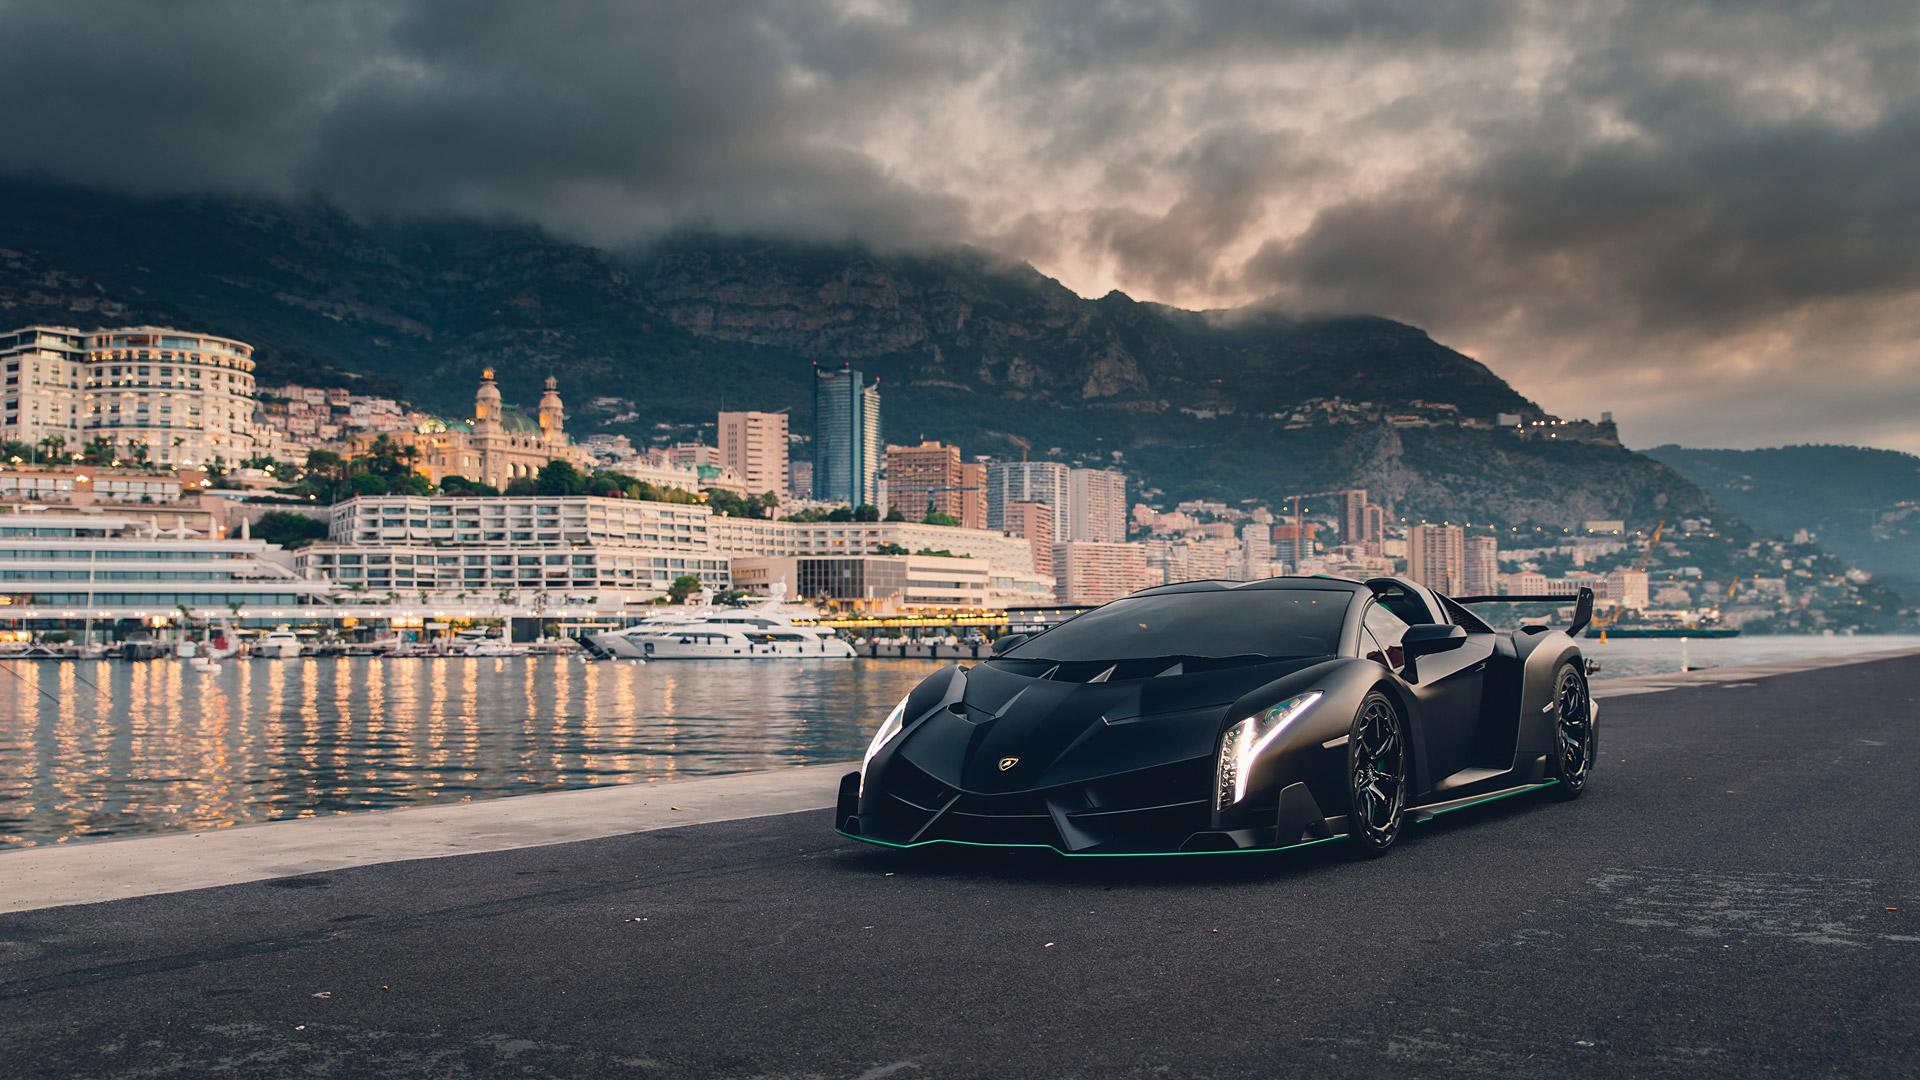 Lamborghini specials market & prices